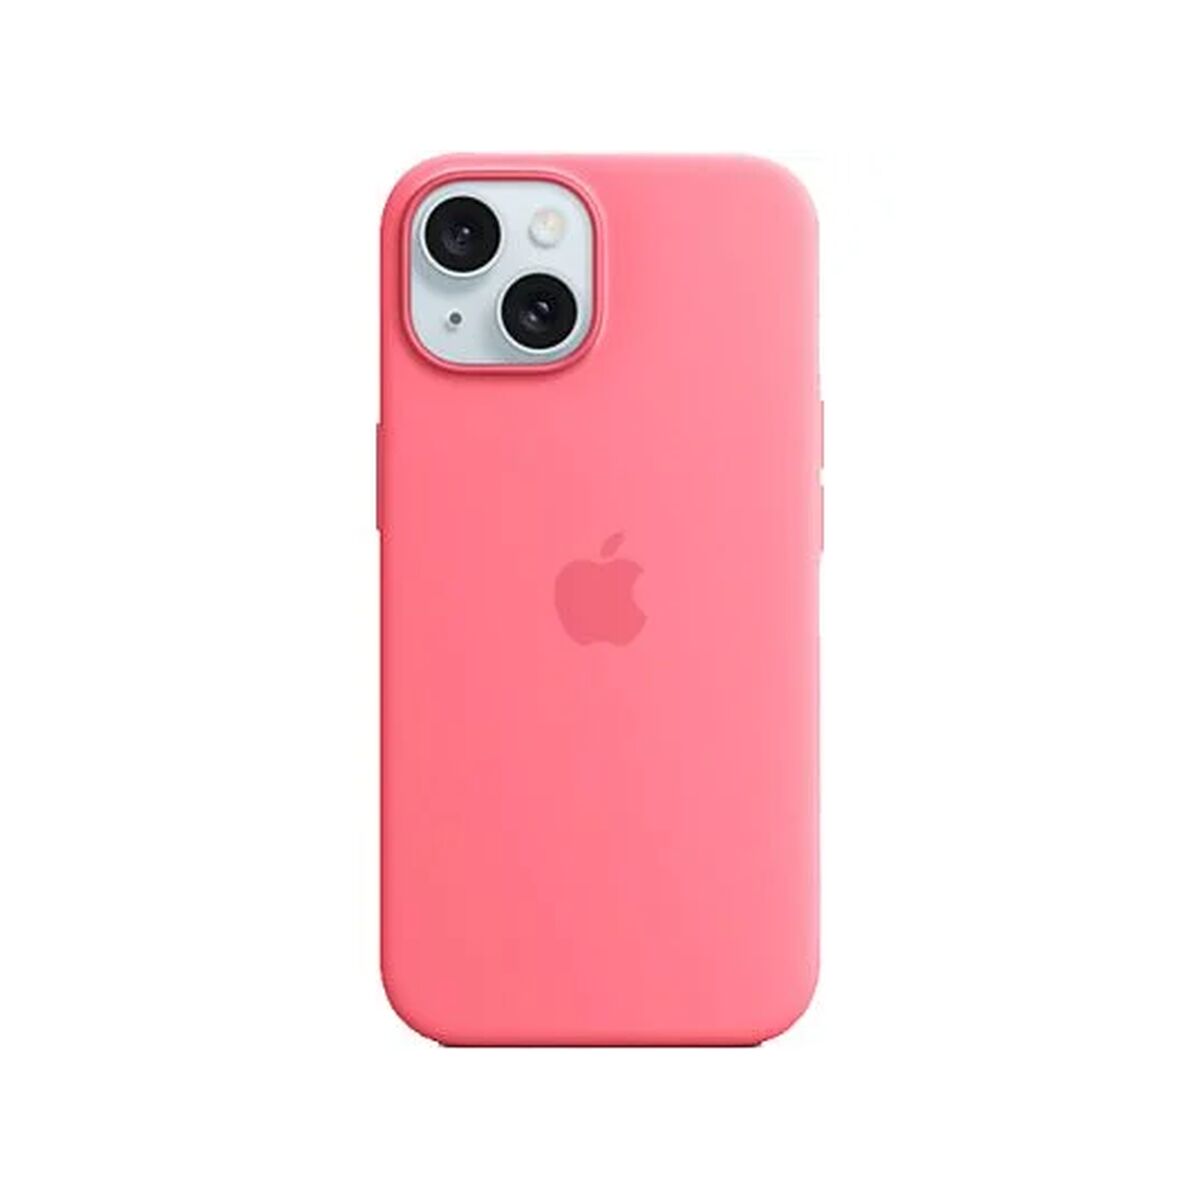 Osta tuote Puhelinsuoja Apple Pinkki iPhone 15 verkkokaupastamme Korhone: Tietokoneet & Elektroniikka 20% alennuksella koodilla VIIKONLOPPU